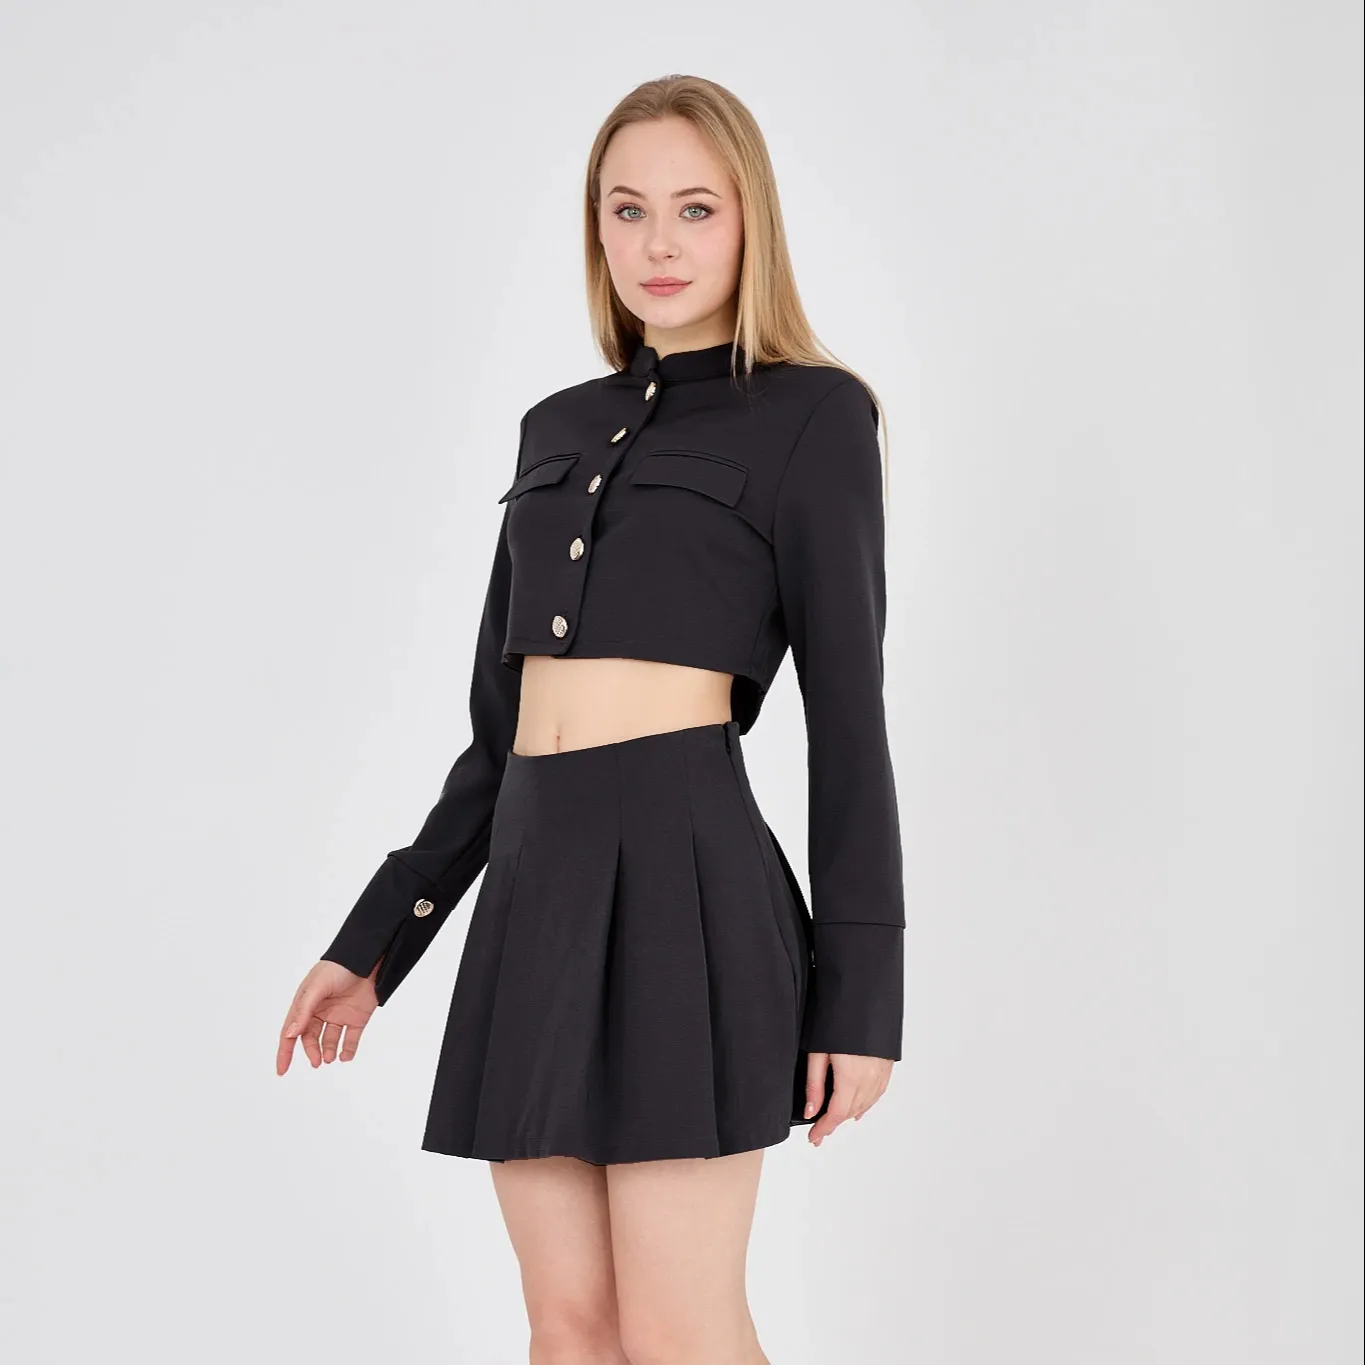 Black Shorts Fabric Skirt and Jacket Set Black Shorts Button Detailed Skirt and Jacket Set